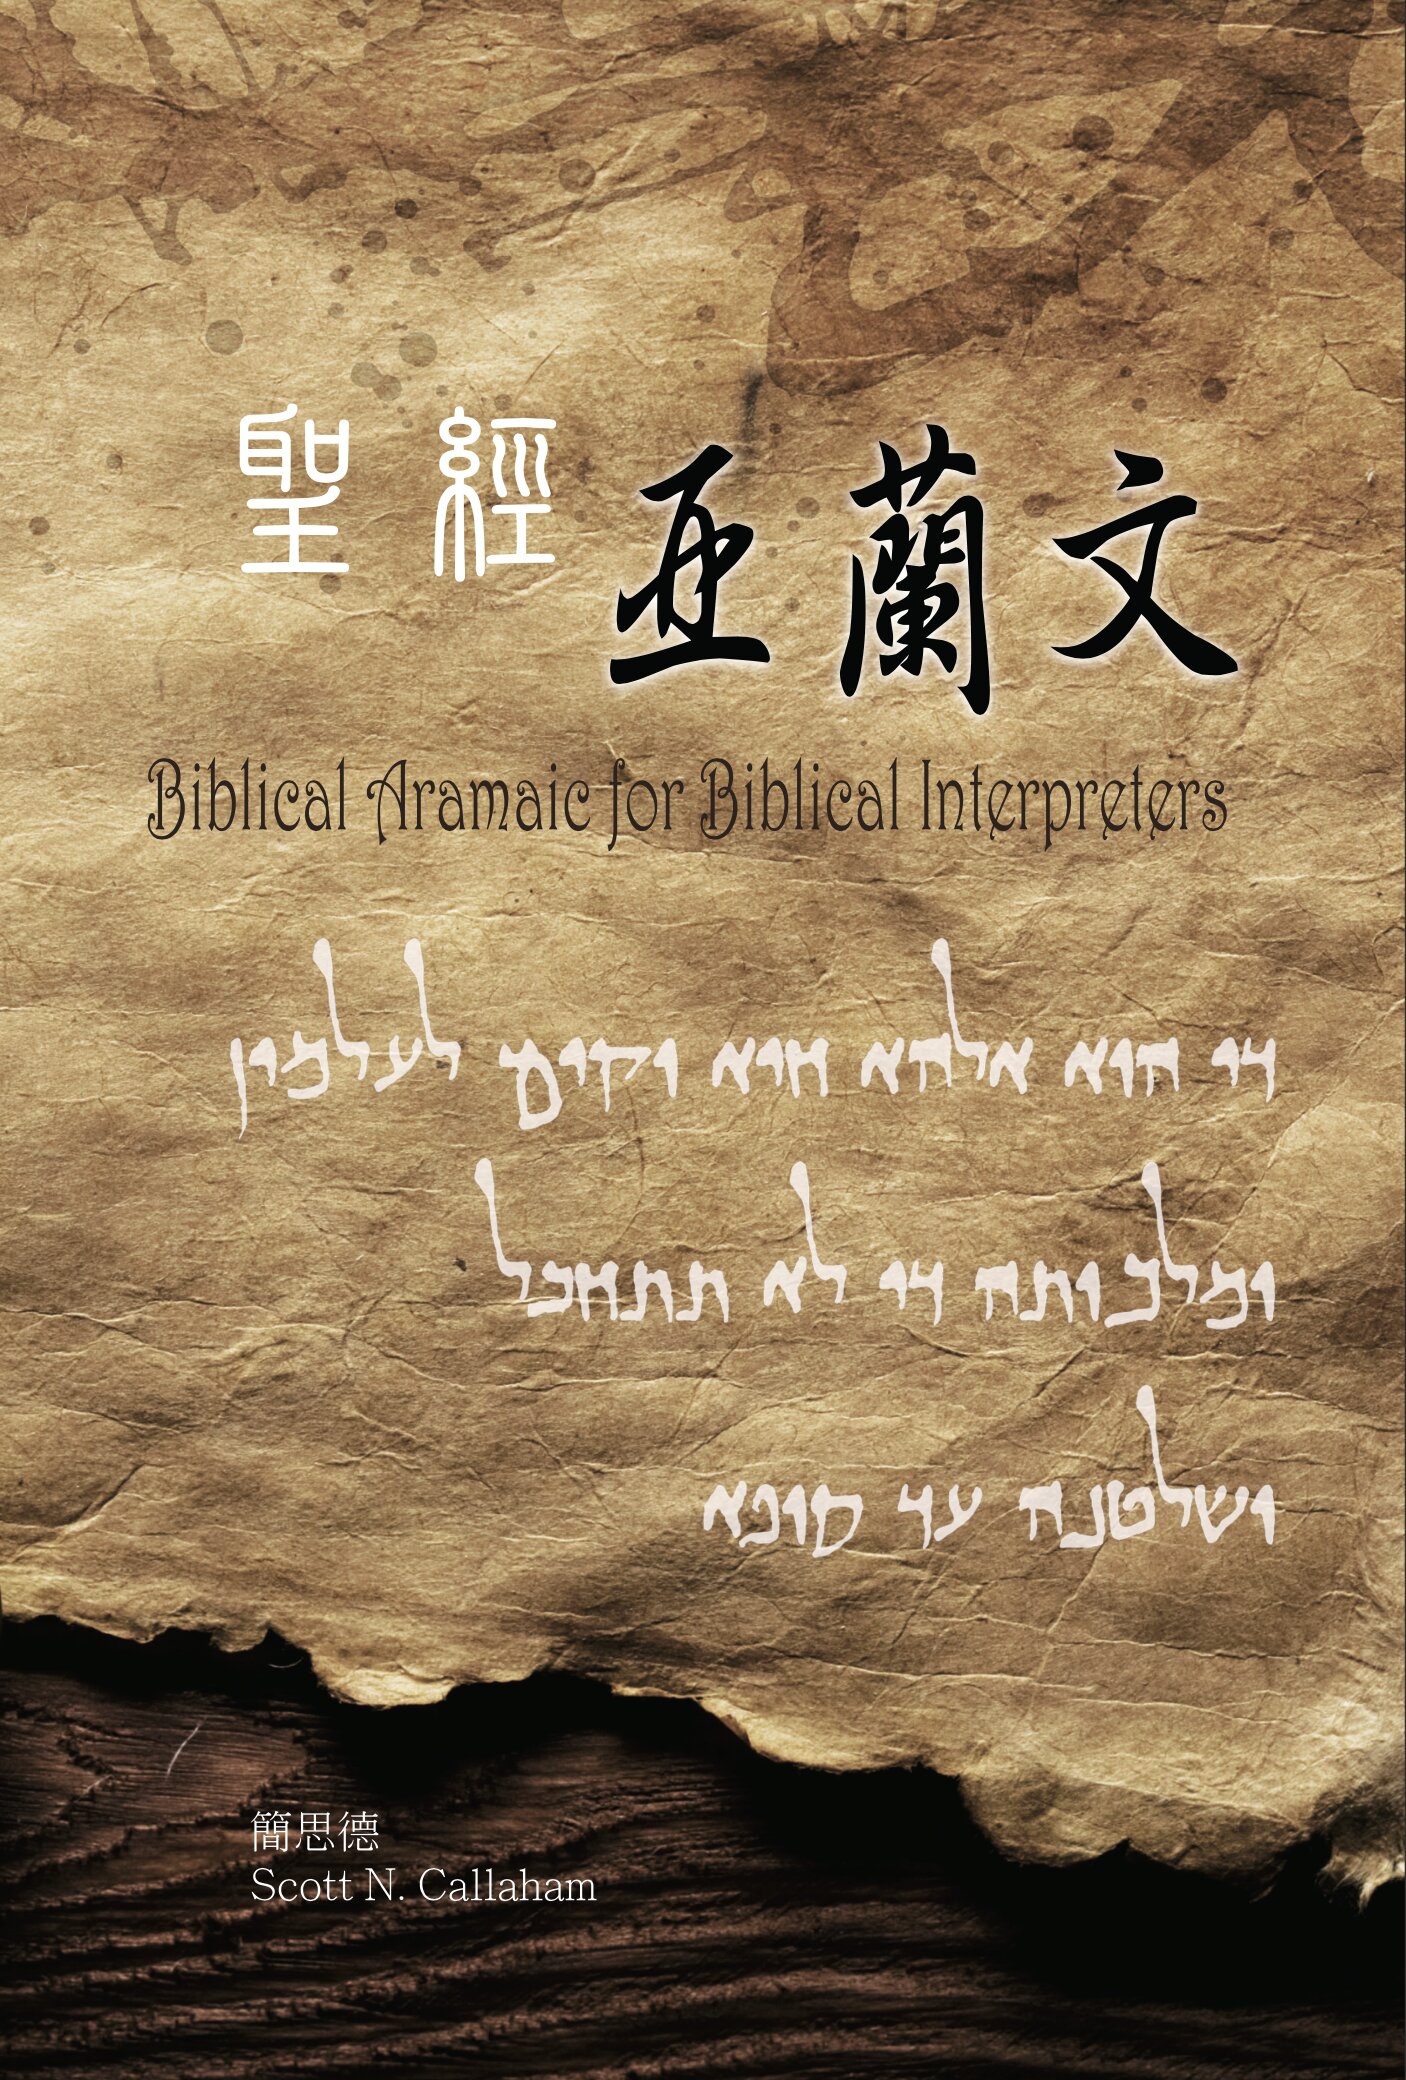 聖經亞蘭文-希伯來文部分（繁體） Biblical Aramaic for Biblical Interpreters (Hebrew section, Traditional Chinese）